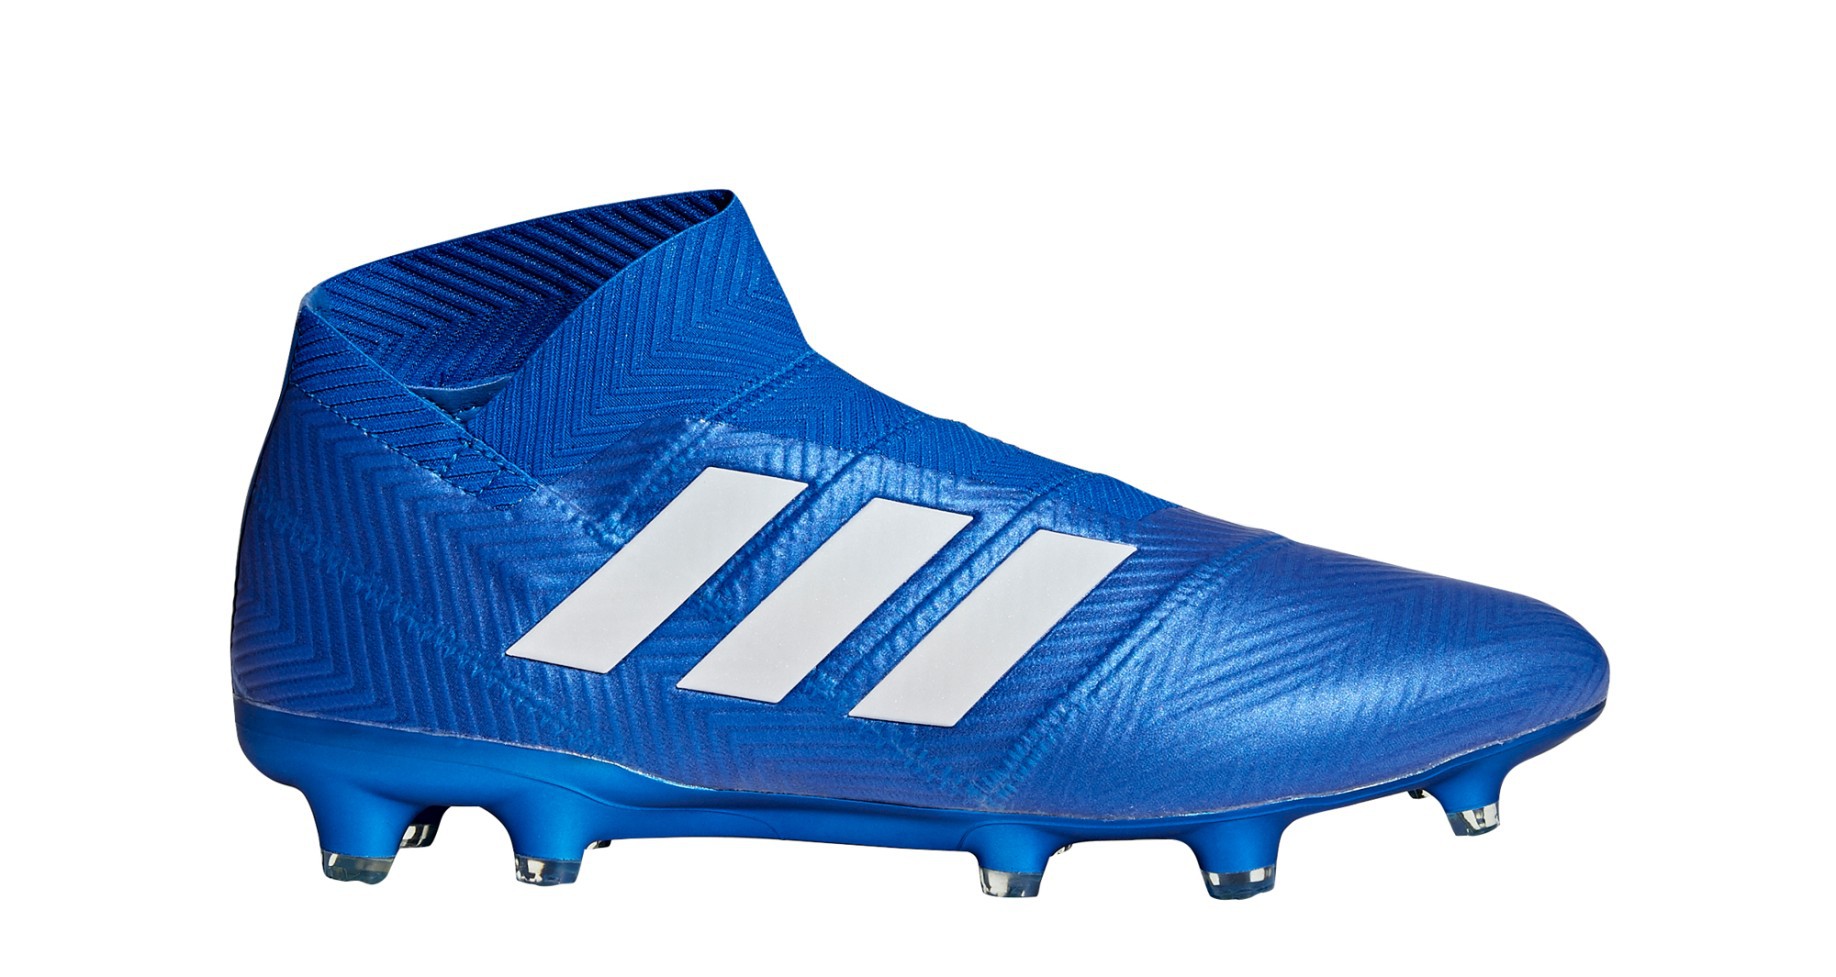 estar Mimar Arsenal Botas de Fútbol Adidas Nemeziz 18+ FG Equipo de Modo de Pack colore azul -  Adidas - SportIT.com